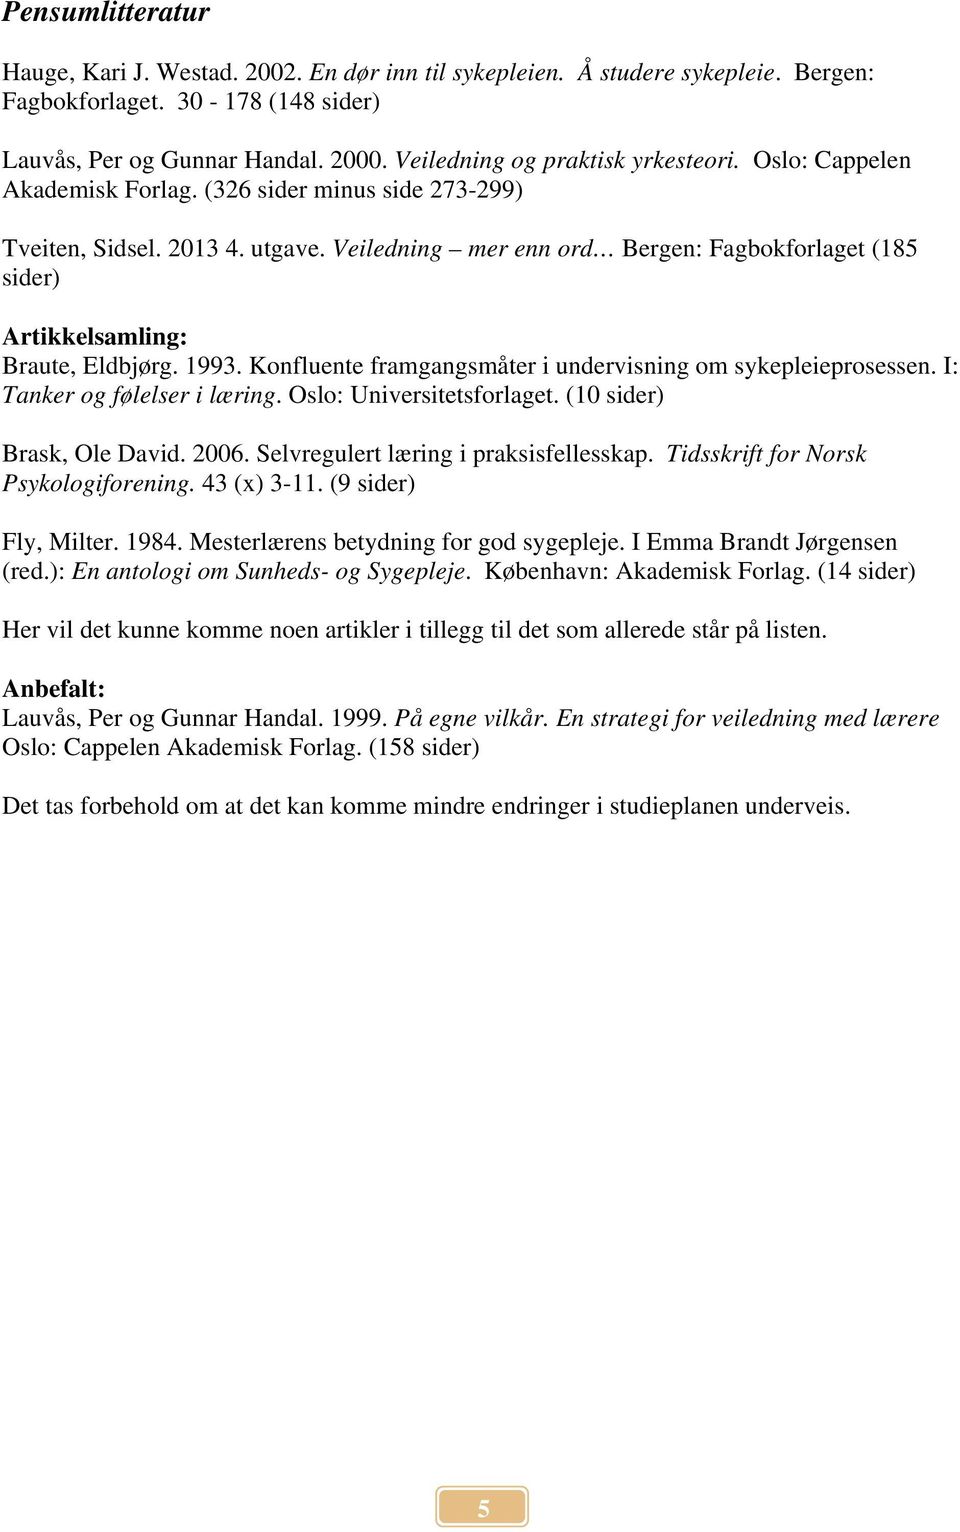 Veiledning mer enn ord Bergen: Fagbokforlaget (185 sider) Artikkelsamling: Braute, Eldbjørg. 1993. Konfluente framgangsmåter i undervisning om sykepleieprosessen. I: Tanker og følelser i læring.